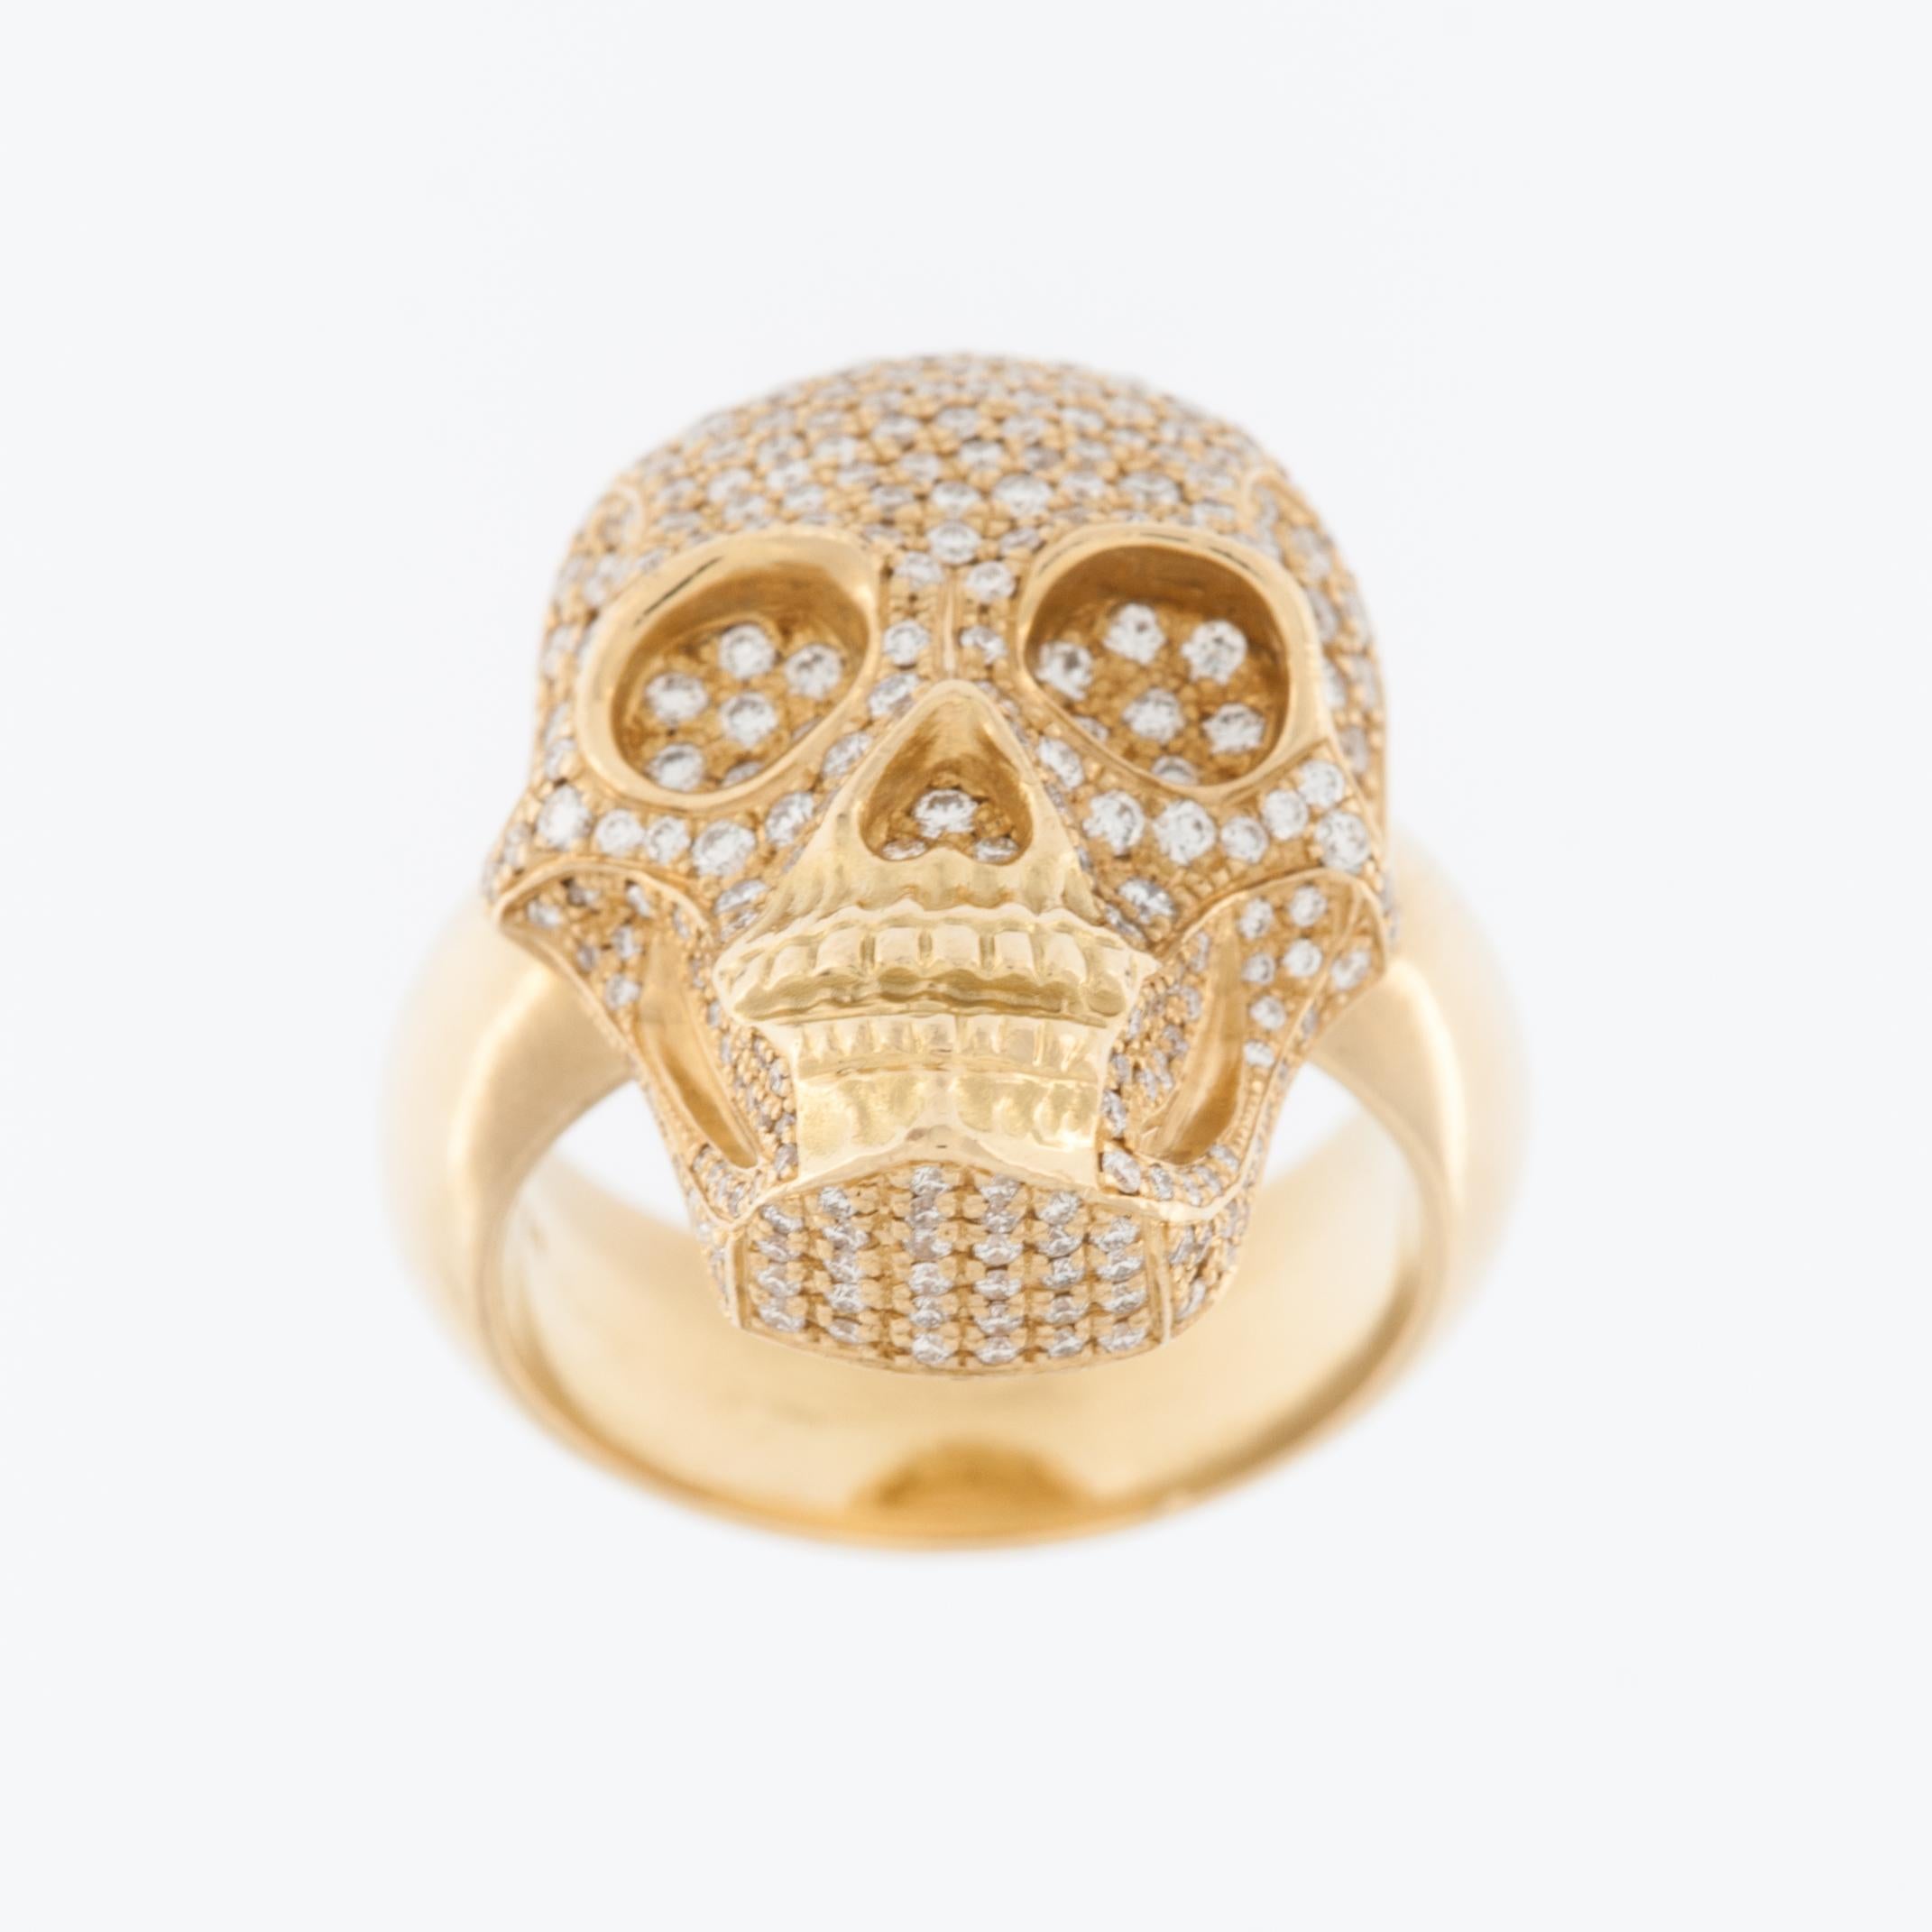 Der Totenkopf-Design-Ring aus 18-karätigem Gelbgold mit Diamanten ist ein auffälliges und einzigartiges Schmuckstück, das Luxus mit kantiger Ästhetik verbindet. Der Ring ist aus hochwertigem 18-karätigem Gelbgold gefertigt, das Langlebigkeit und